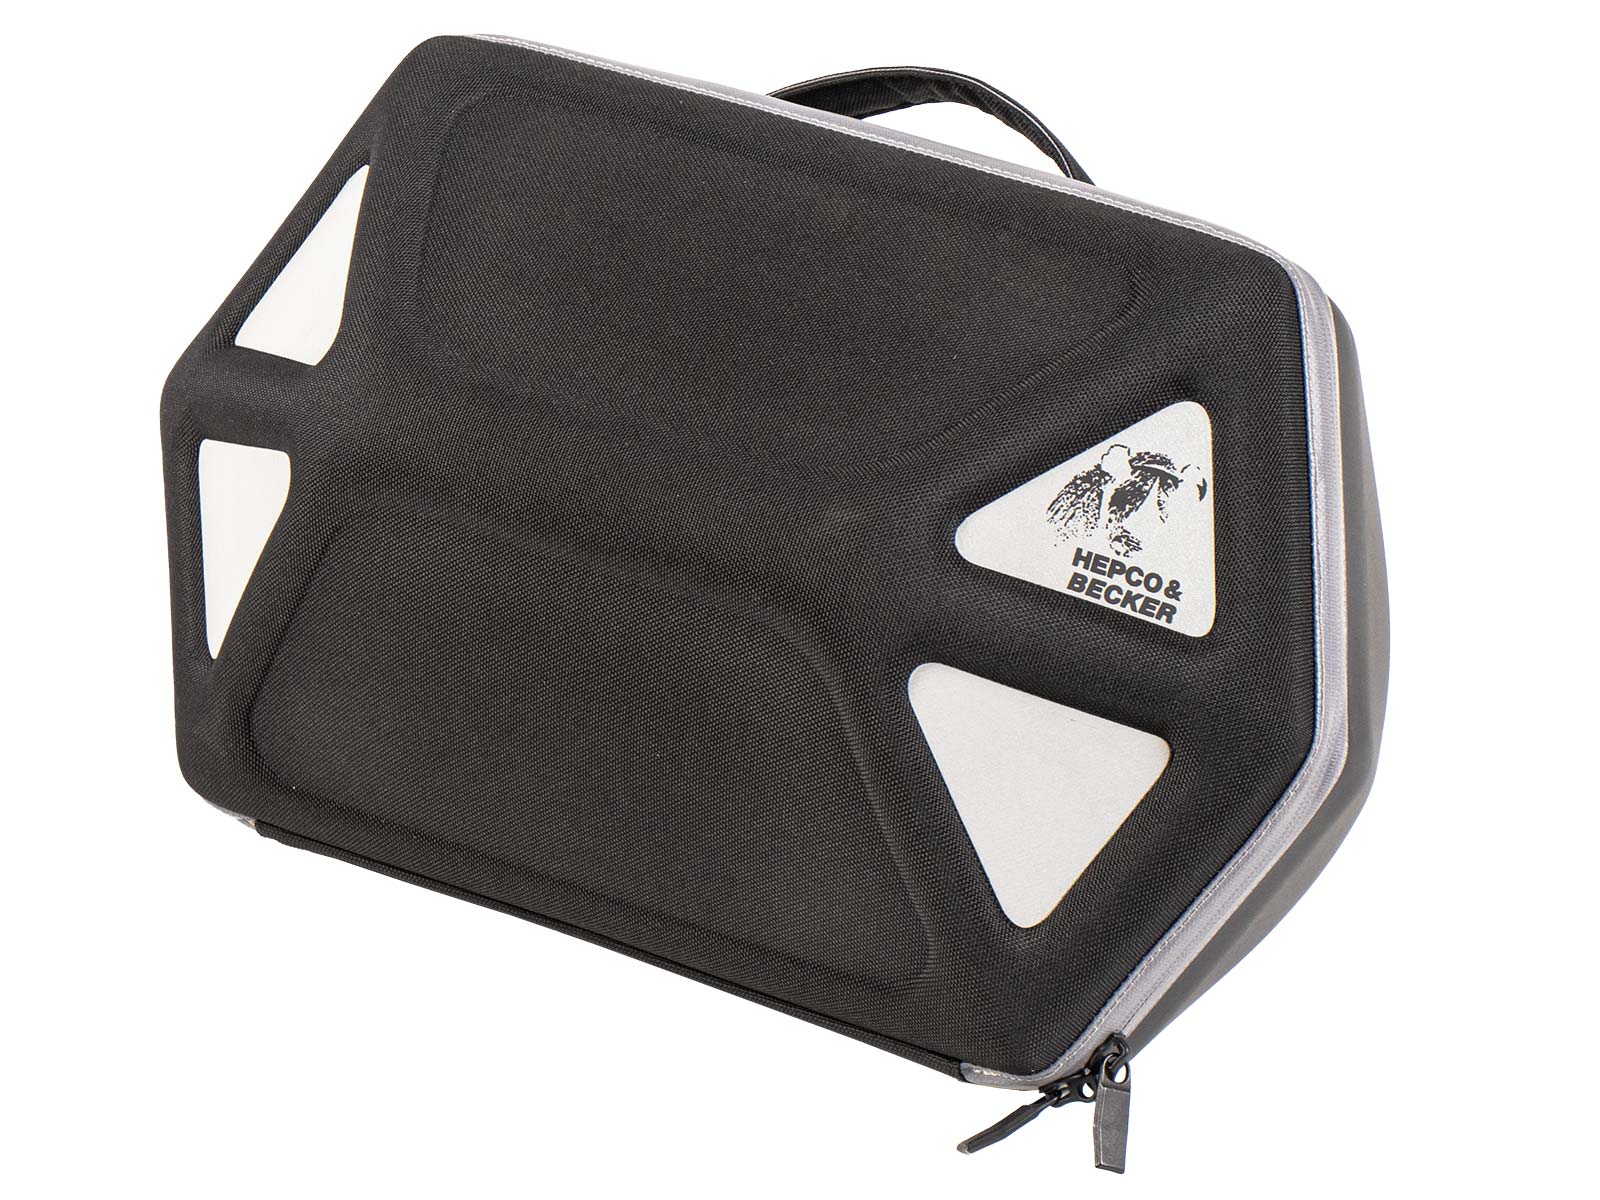 Royster side bag black/grey for C-Bow holder - only 1 side